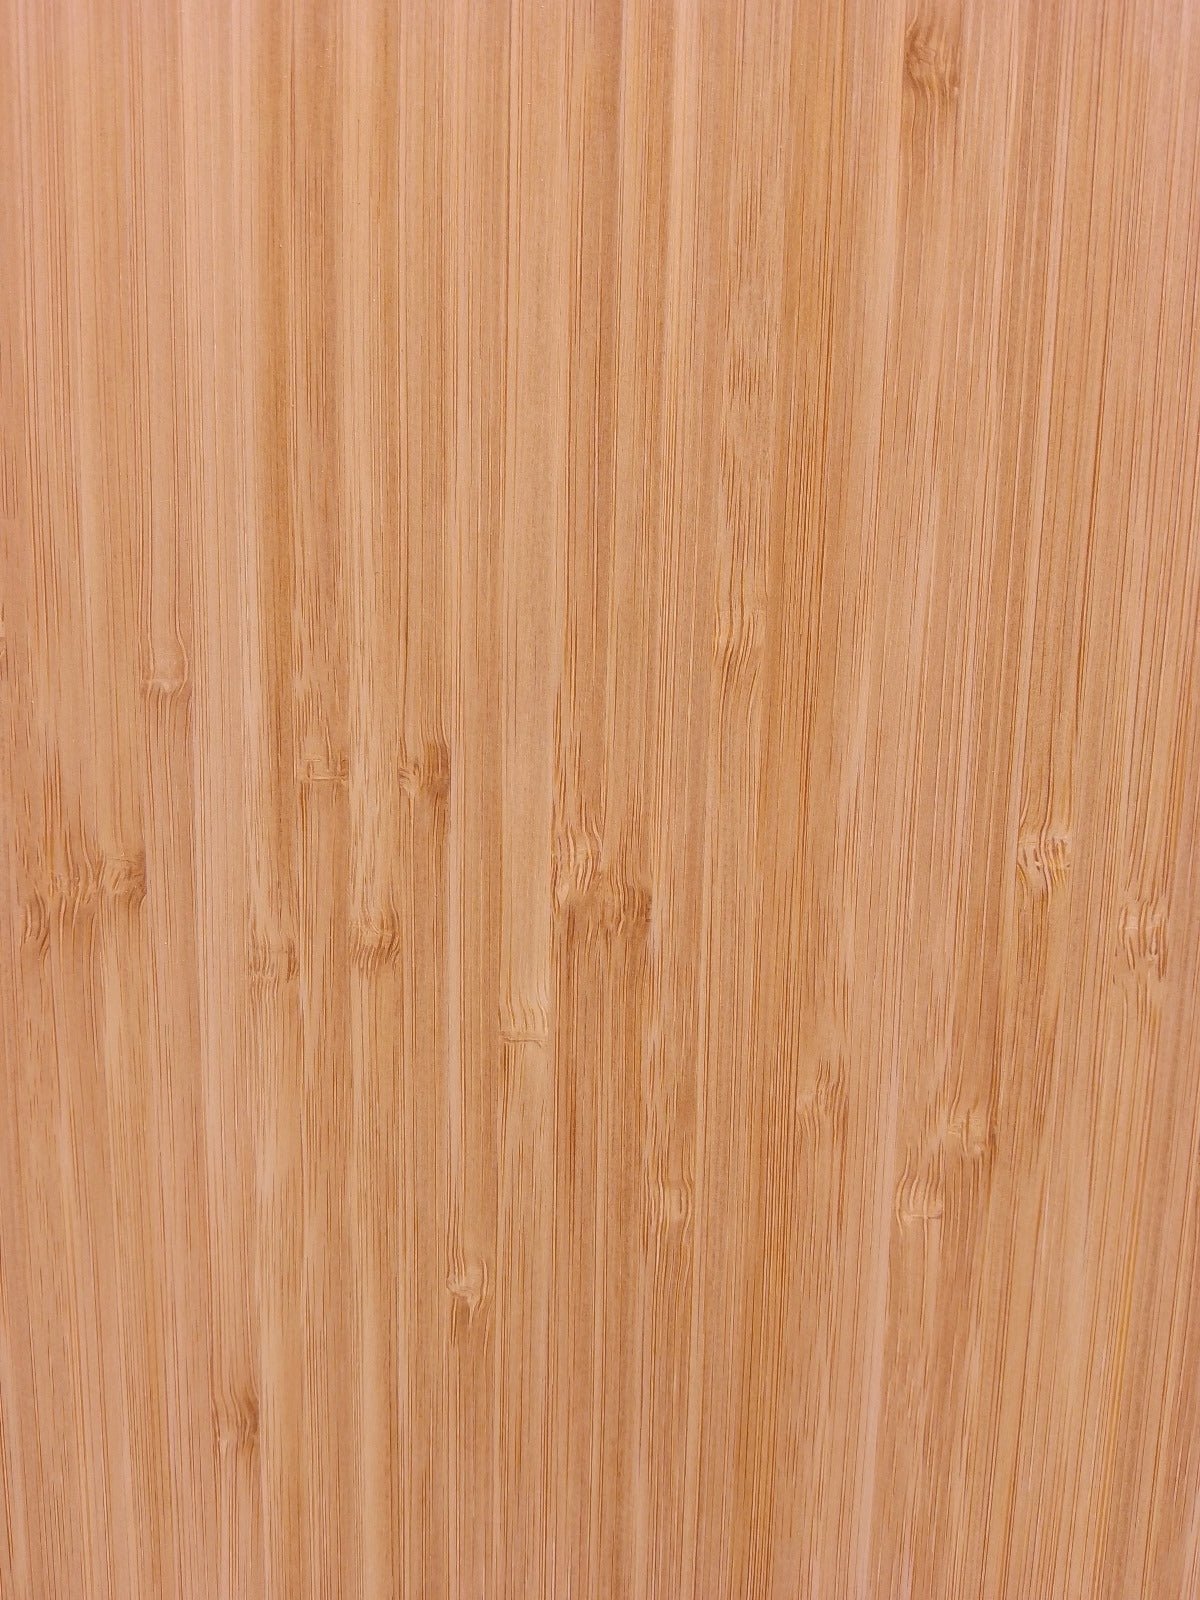 Bamboe meubel paneel - met 2 x kabeldoorvoer